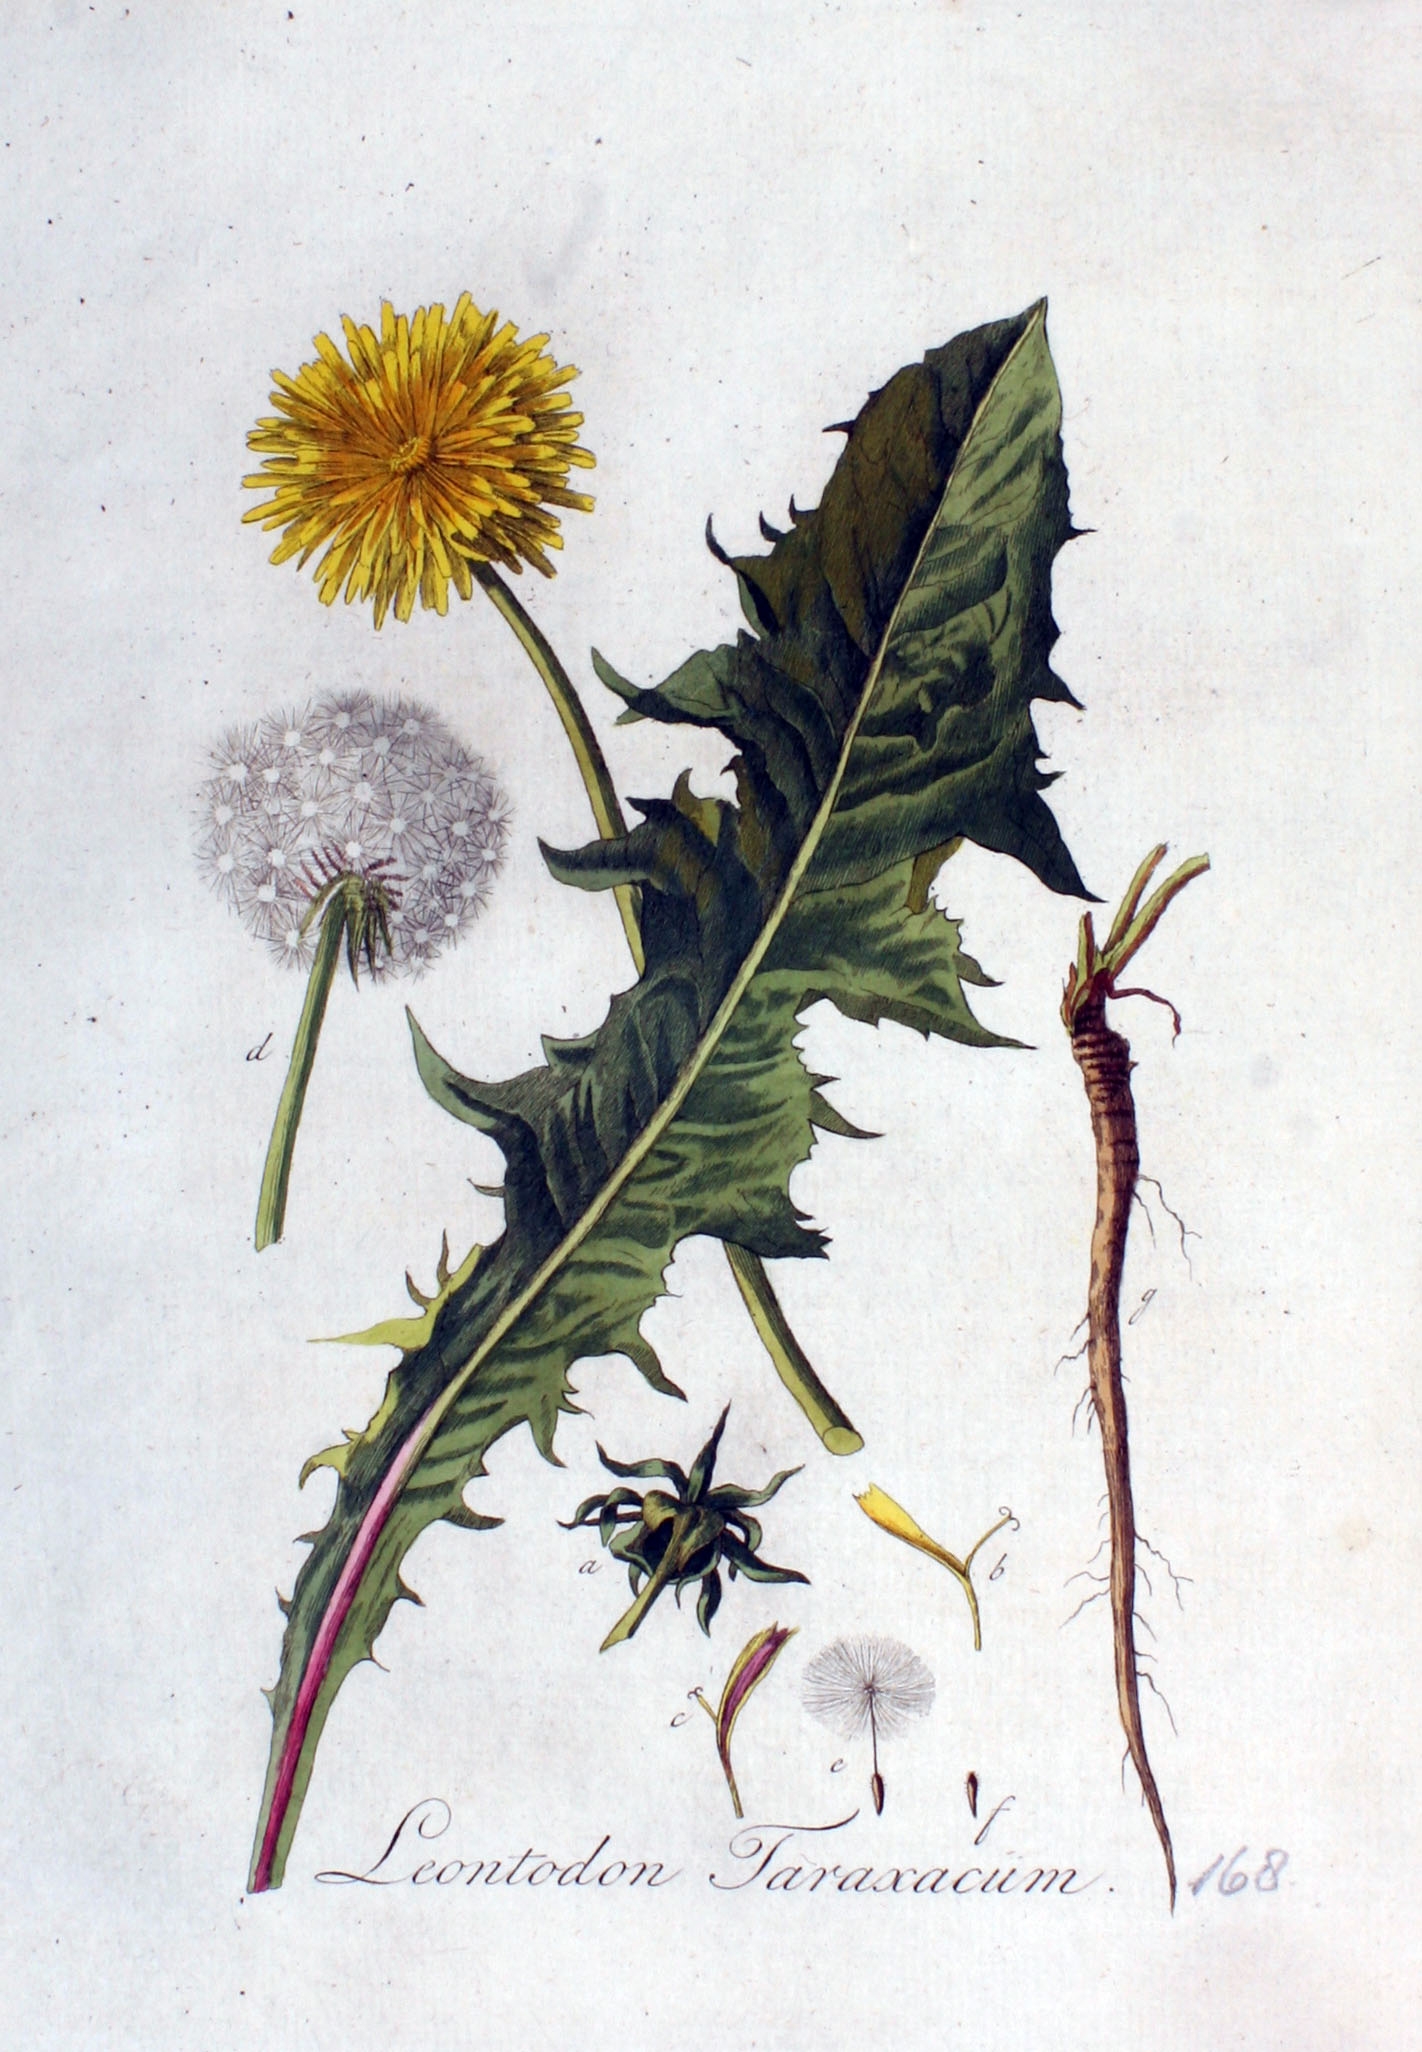 Одуванчик лекарственный гербарий. Taraxacum erythrospermum. Одуванчик лекарственный Ботанический рисунок. Царство одуванчика лекарственного. Одуванчик лекарственный род